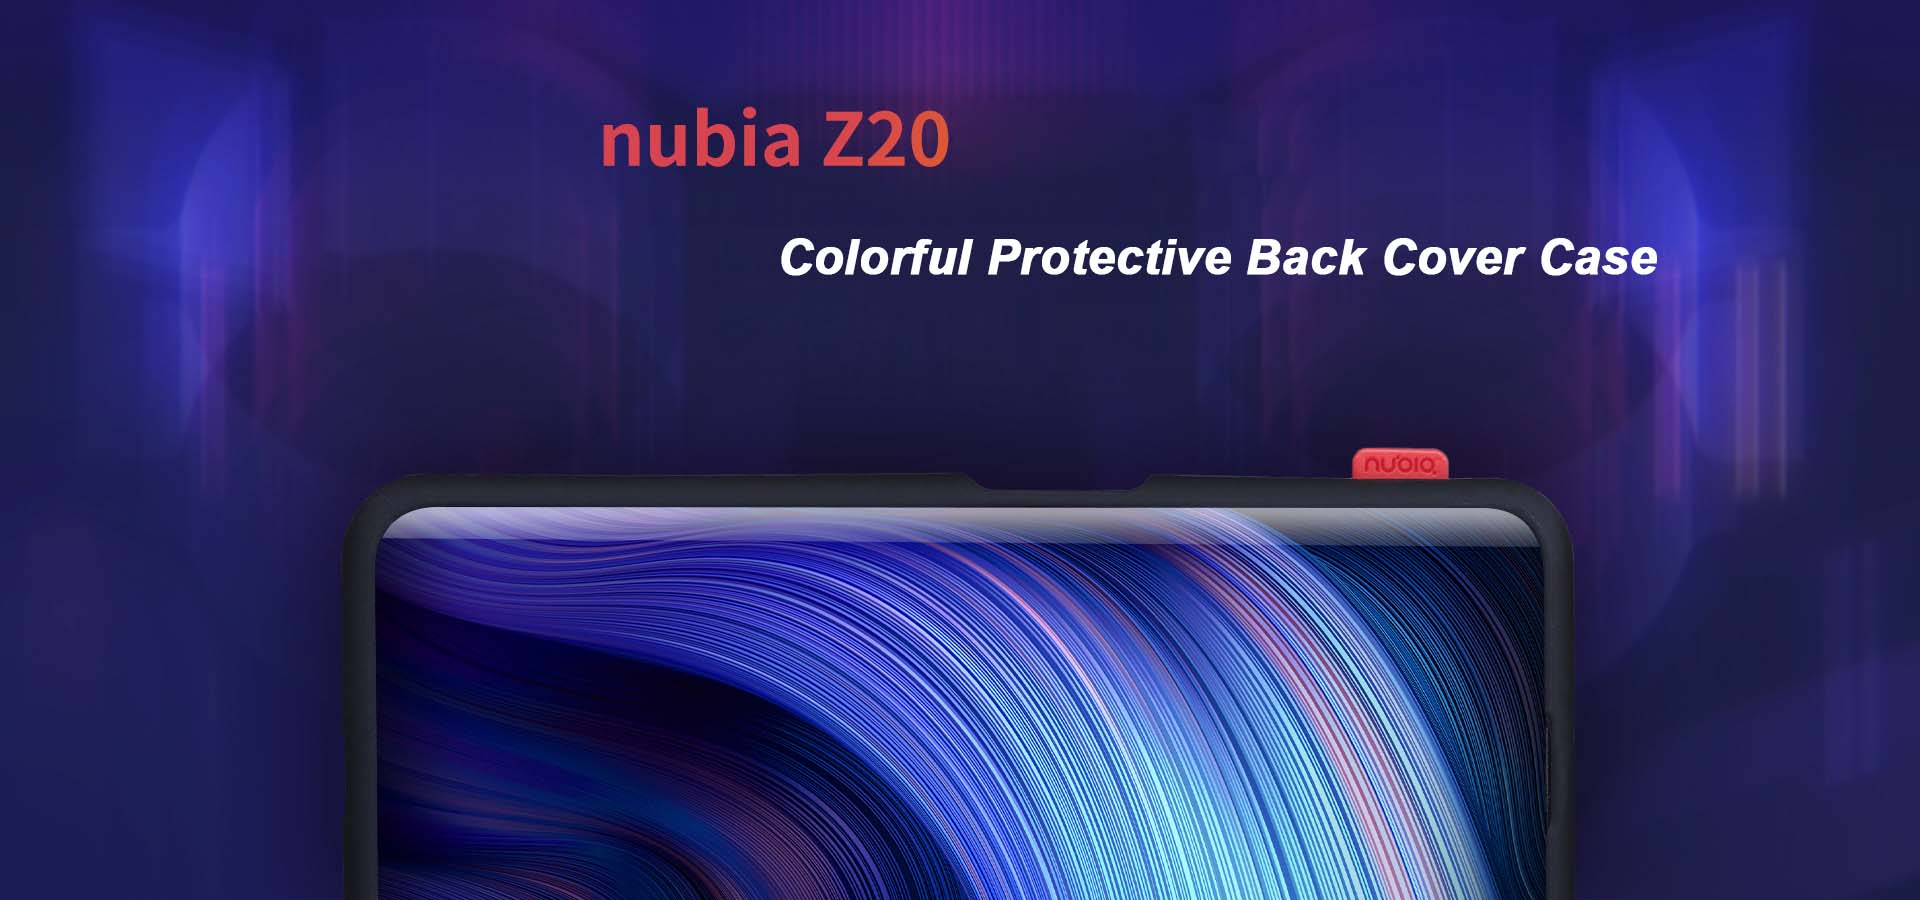 Nubia Z20 case